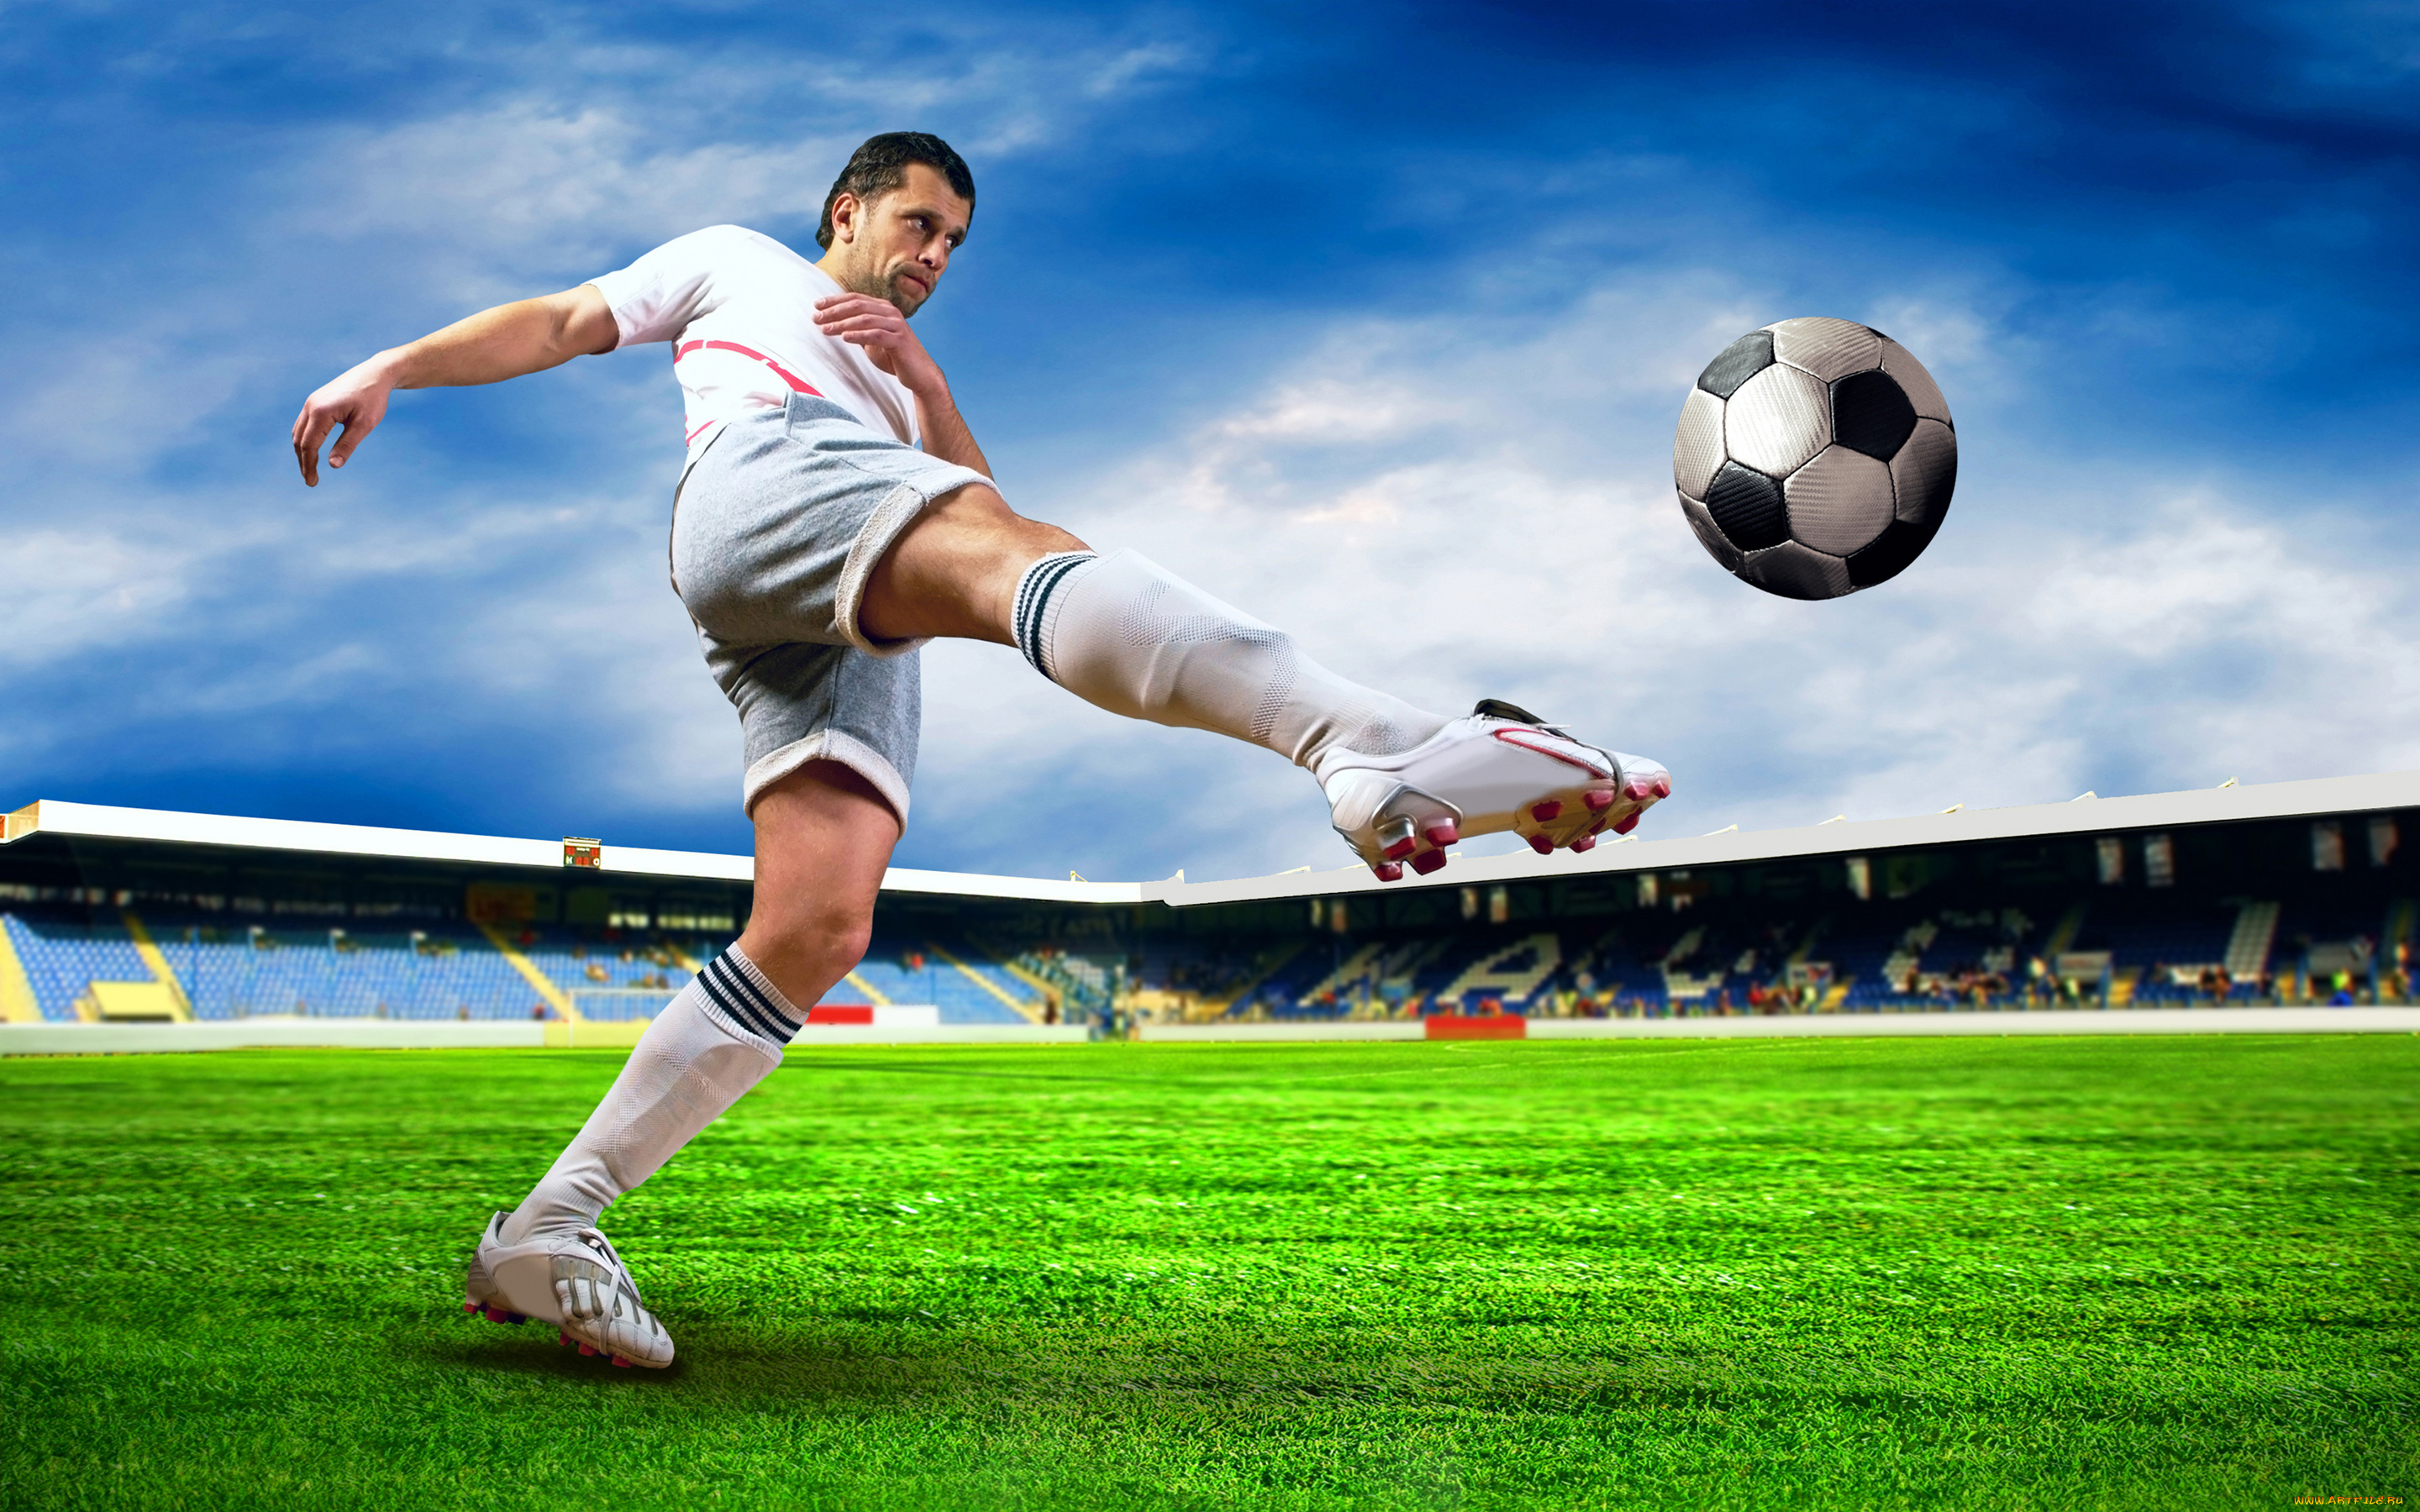 Спортивные события футбол. Футбол. Спорт футбол. Футболисты на поле. Футболист пинает мяч.